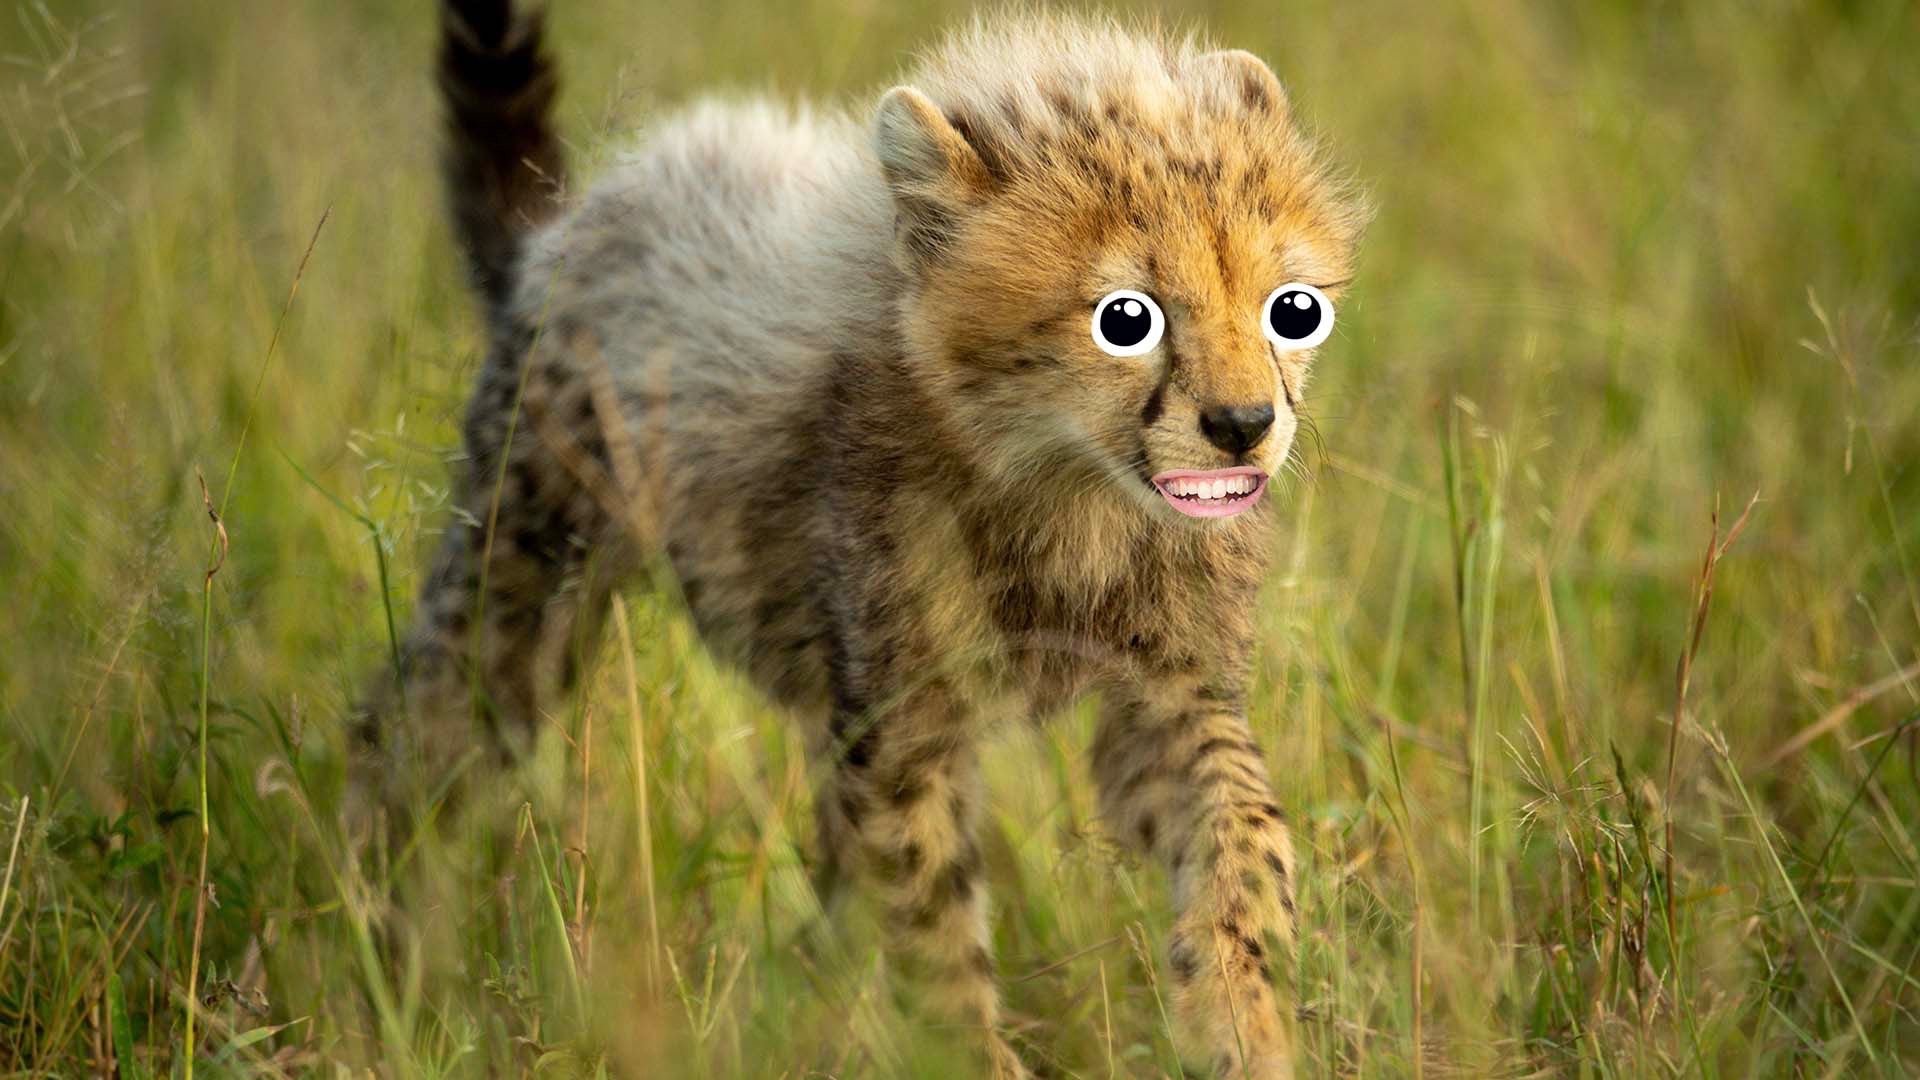 A cheetah cub